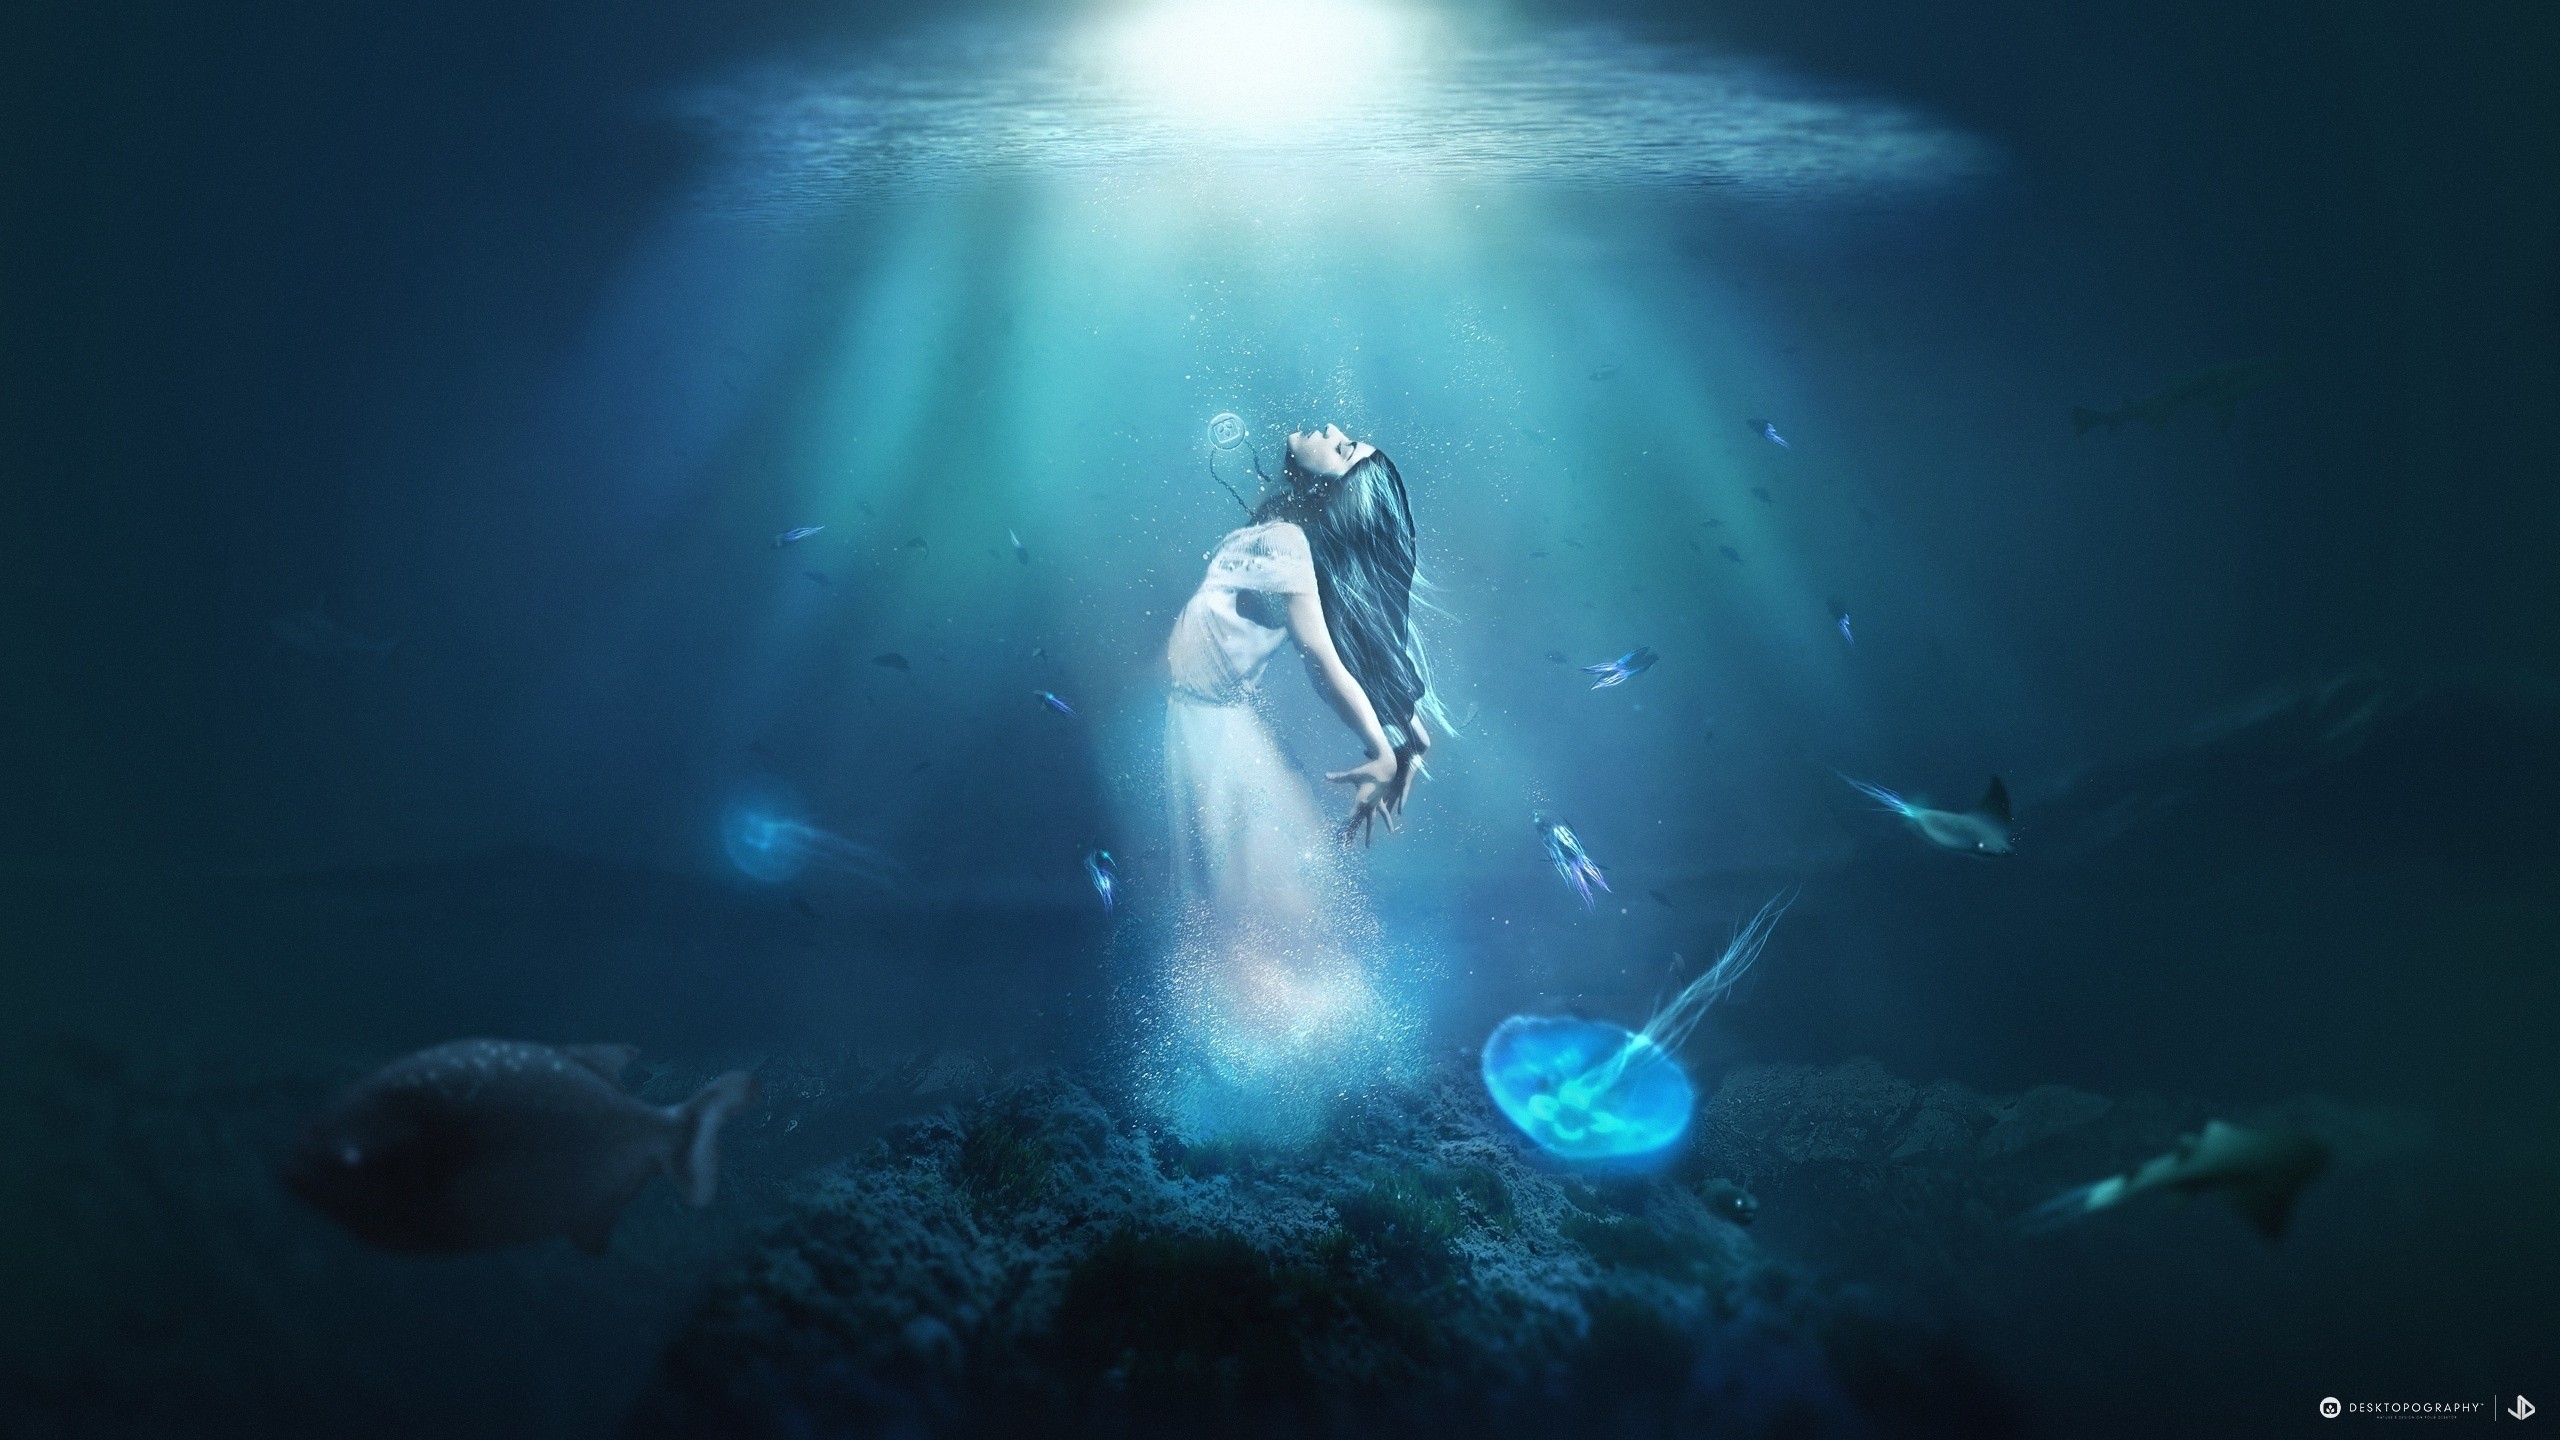 General 2560x1440 fantasy art Desktopography underwater women fish digital art cyan blue